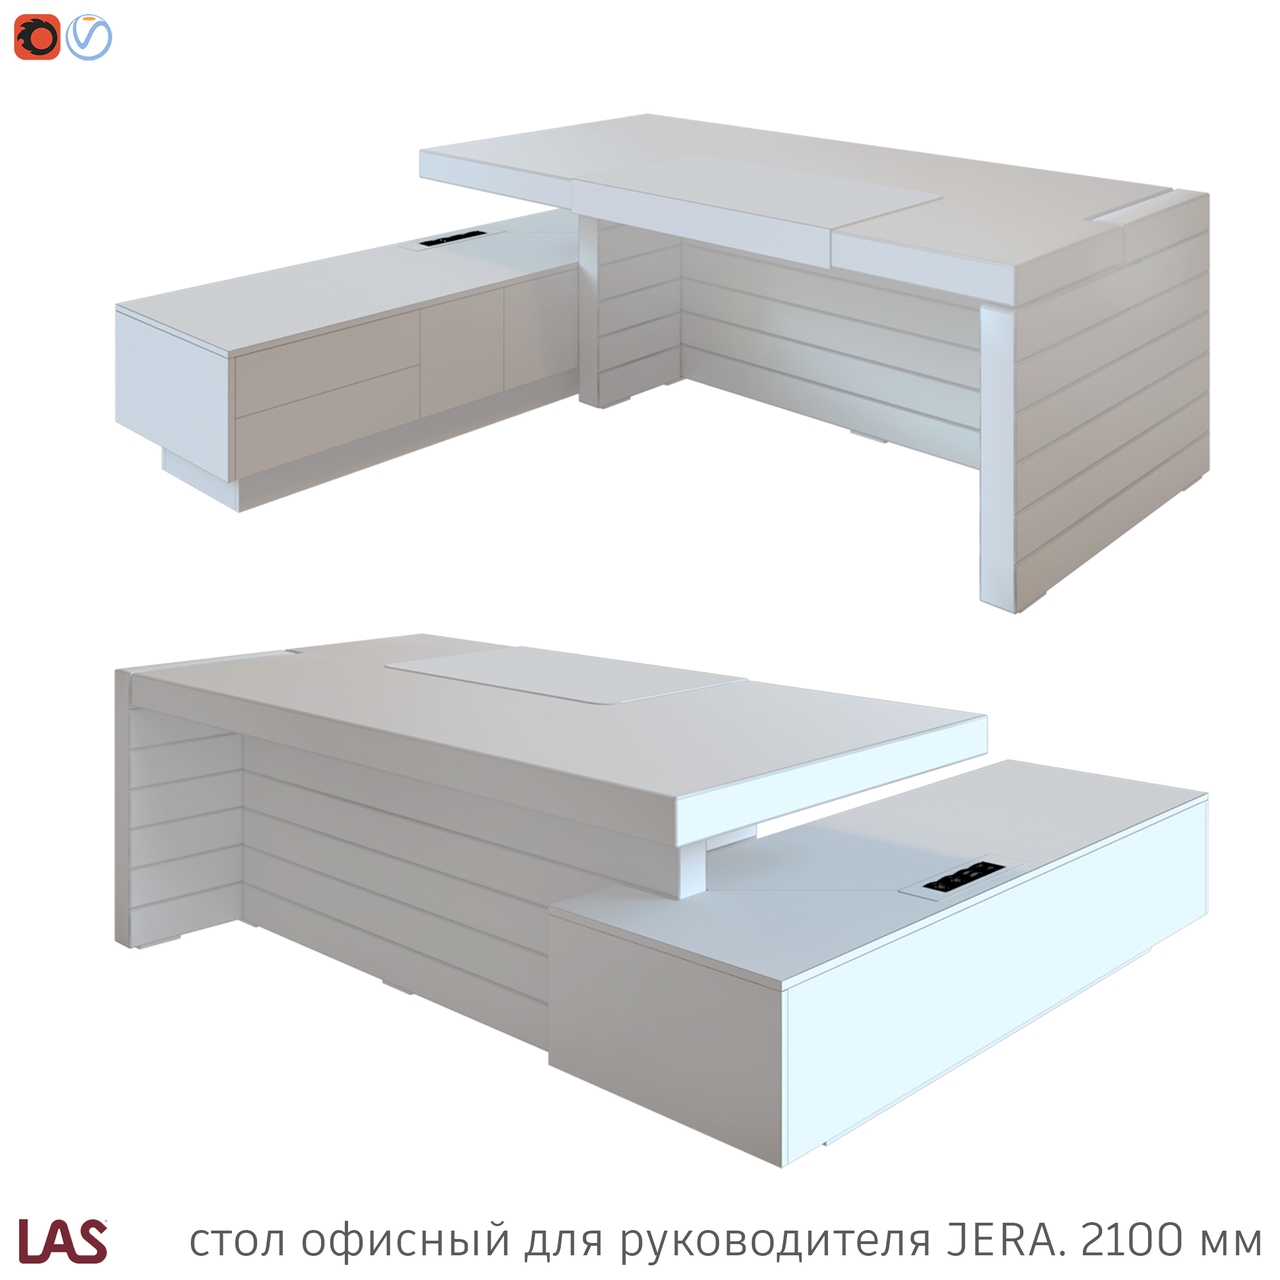 Превью G 3D-модели офисного стола LAS Jera 159927 / 159931